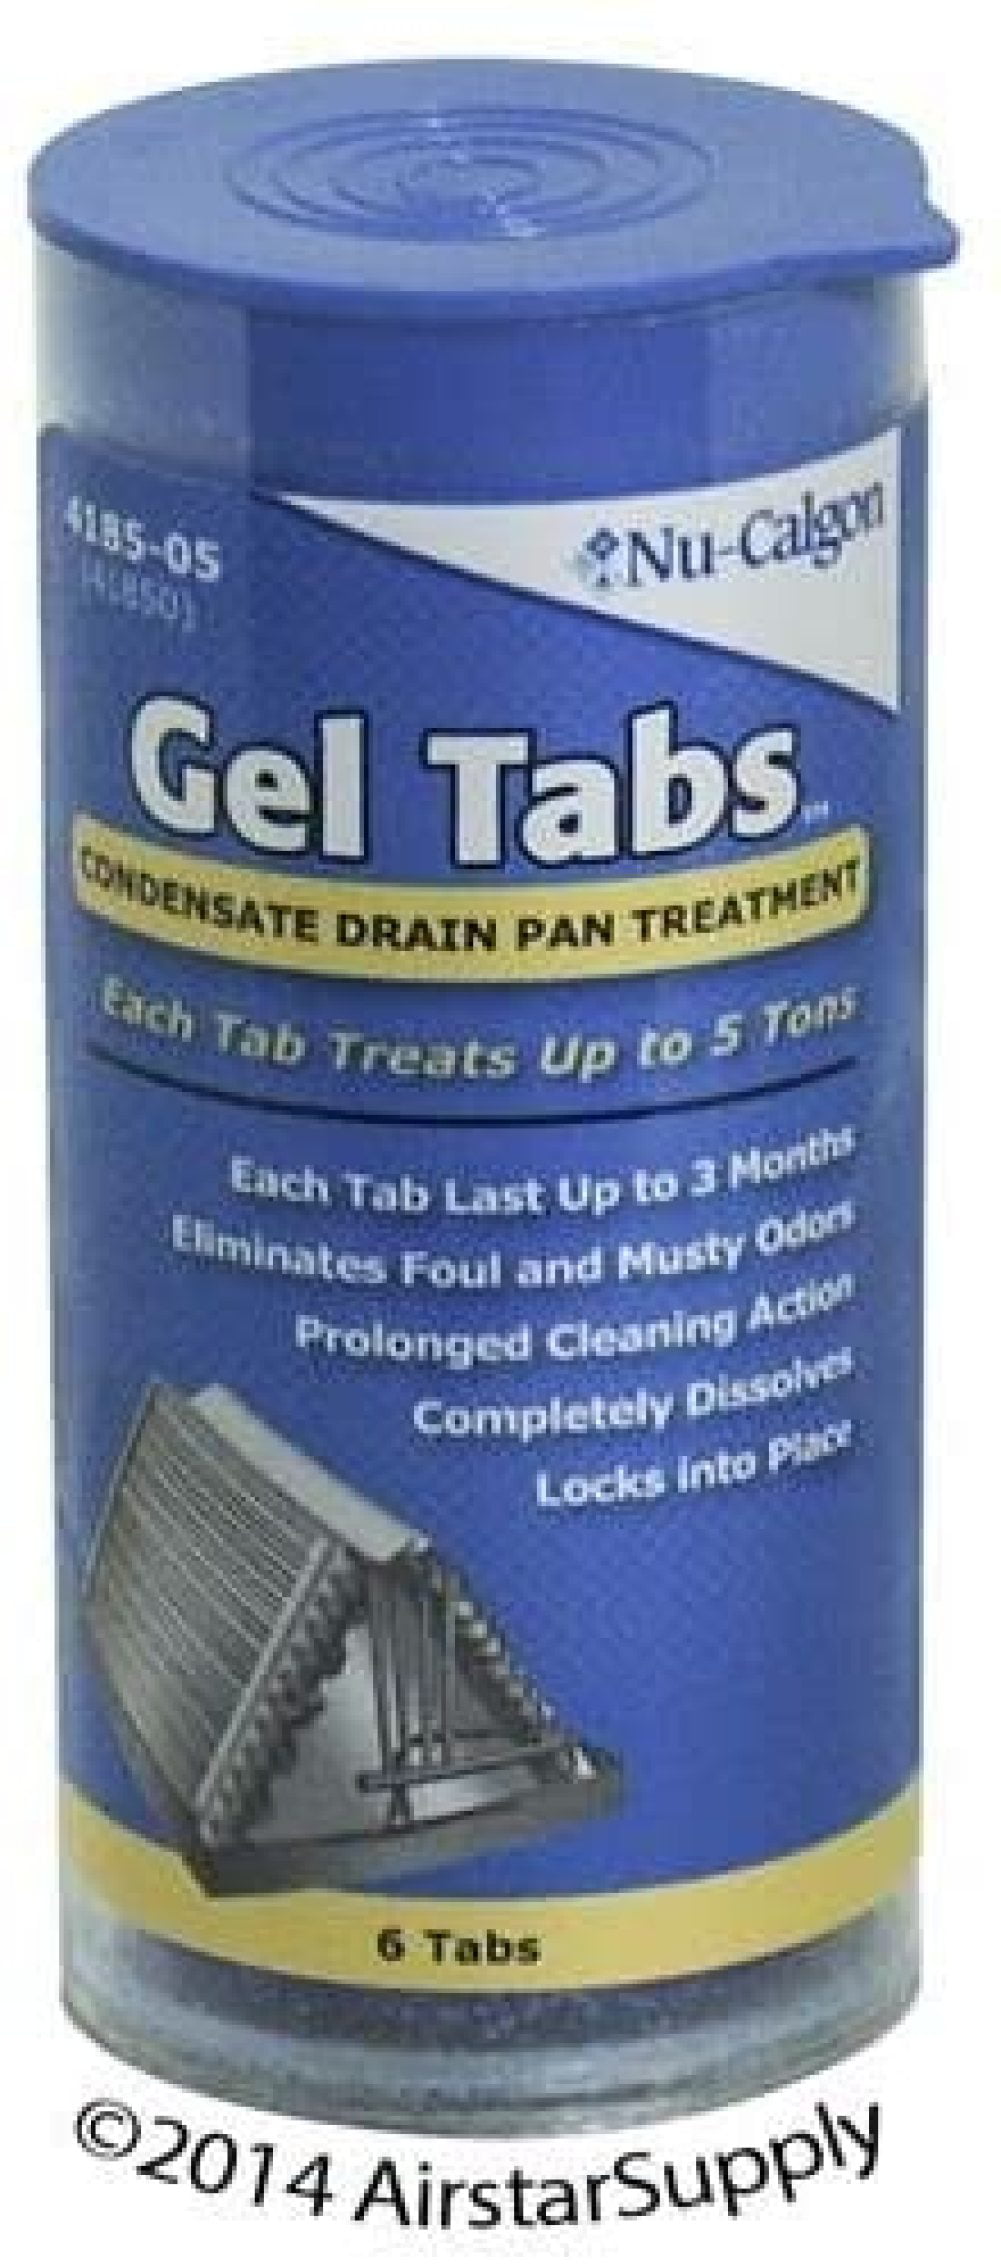 4 5 Ton Nu-Calgon BULK Gel Tab Condensate Drain Pan Treatment # 4185-05 